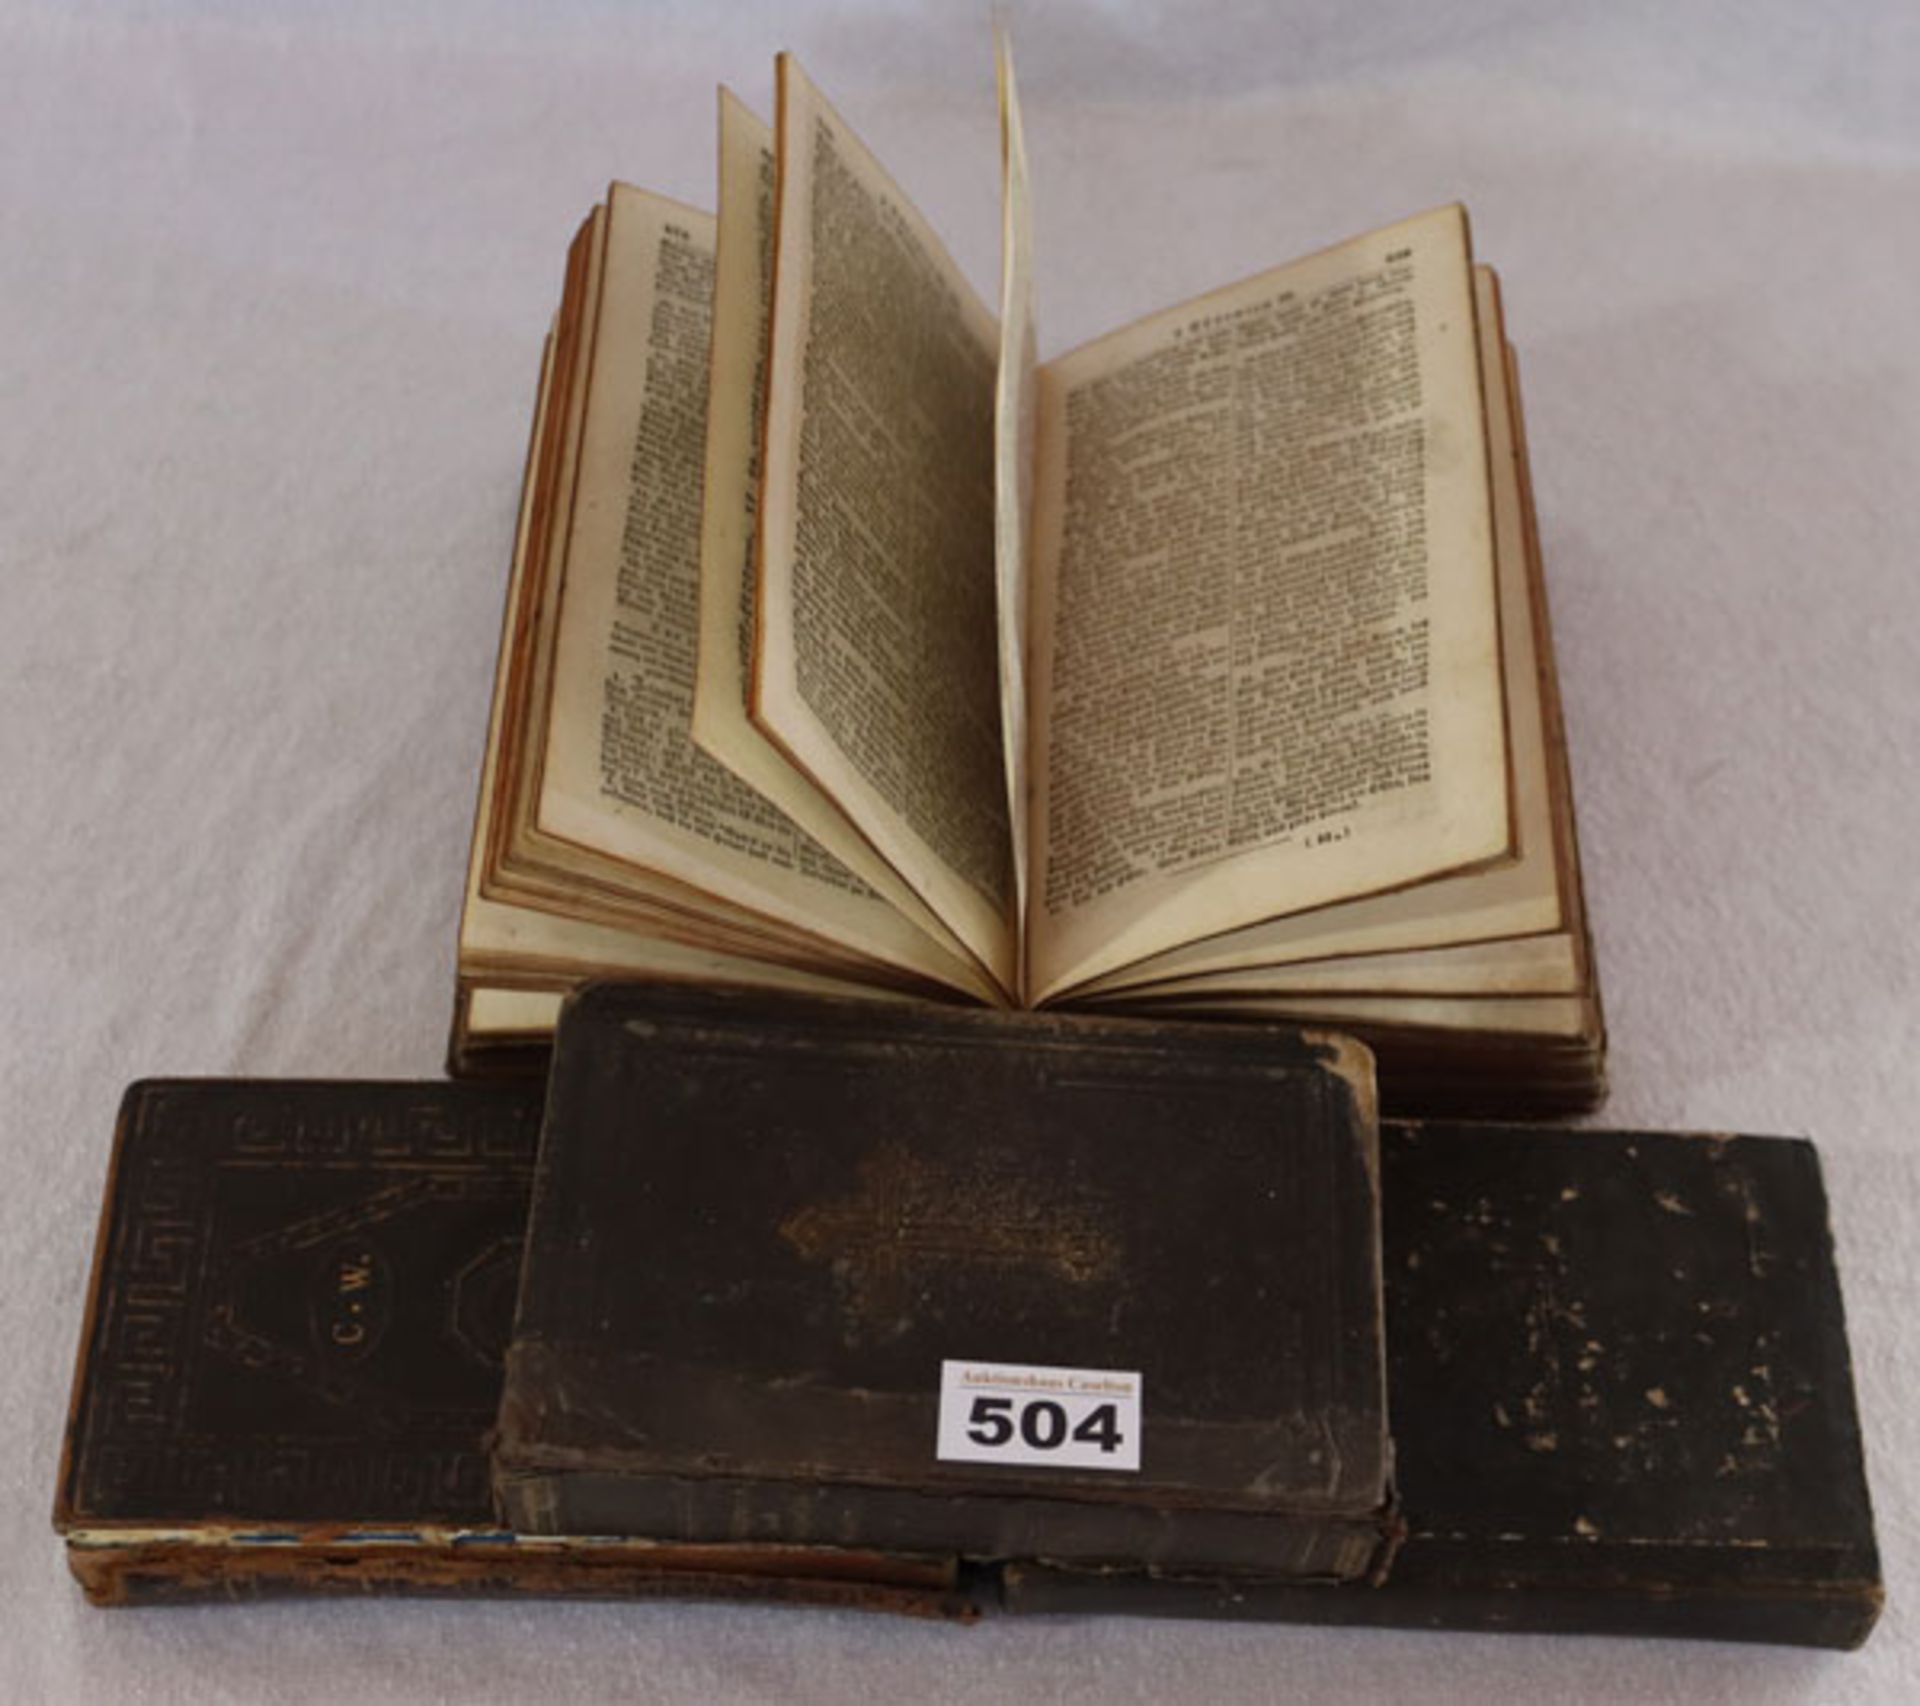 Konvolut von 4 religiösen Büchern, stark beschädigt, Alters- und Gebrauchsspuren